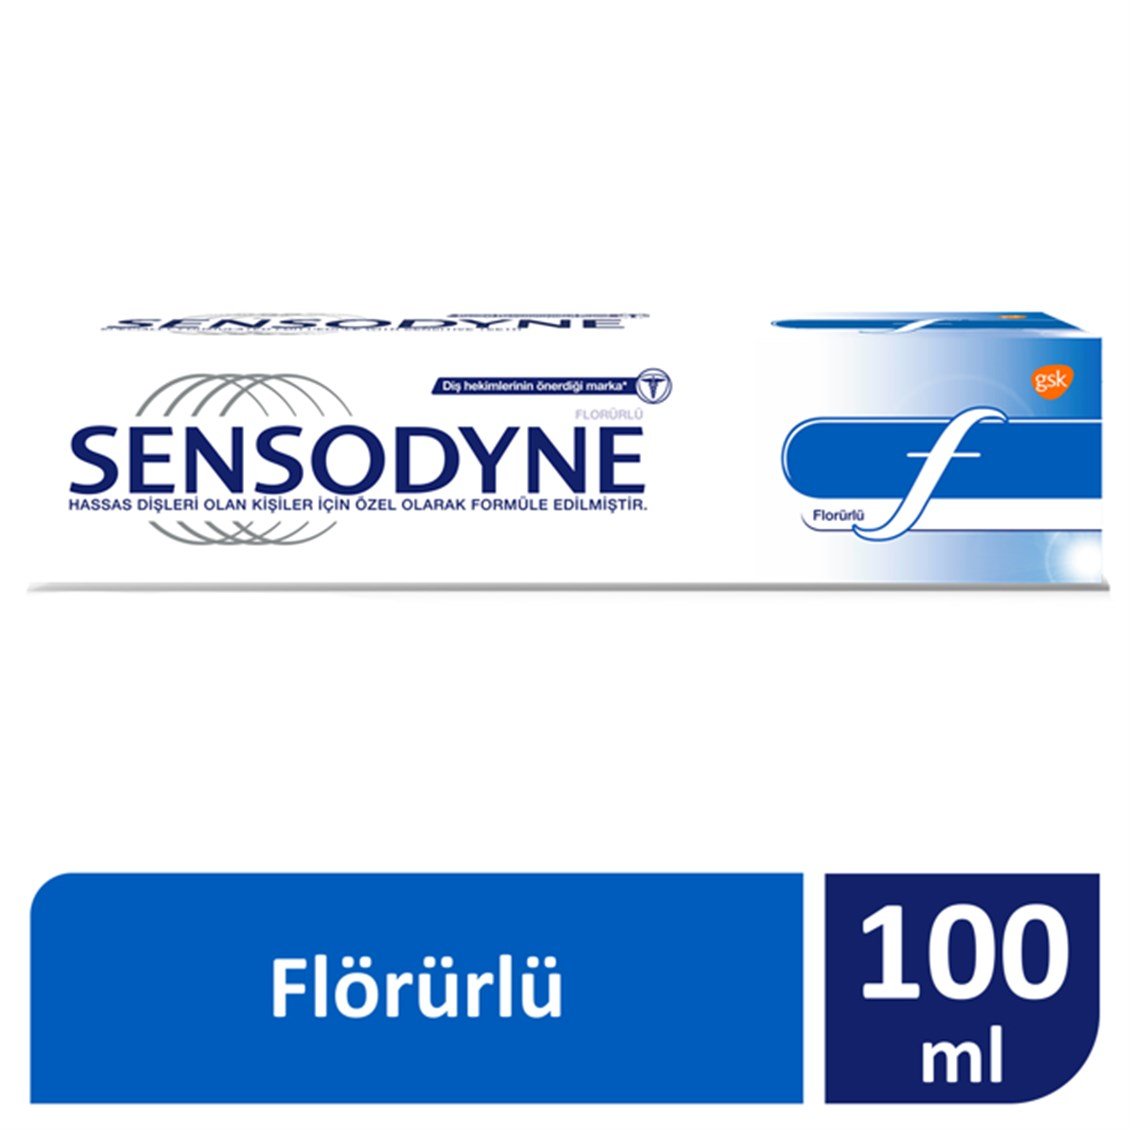 Sensodyne Florürlü Diş Macunu 100 ml - Onur Market